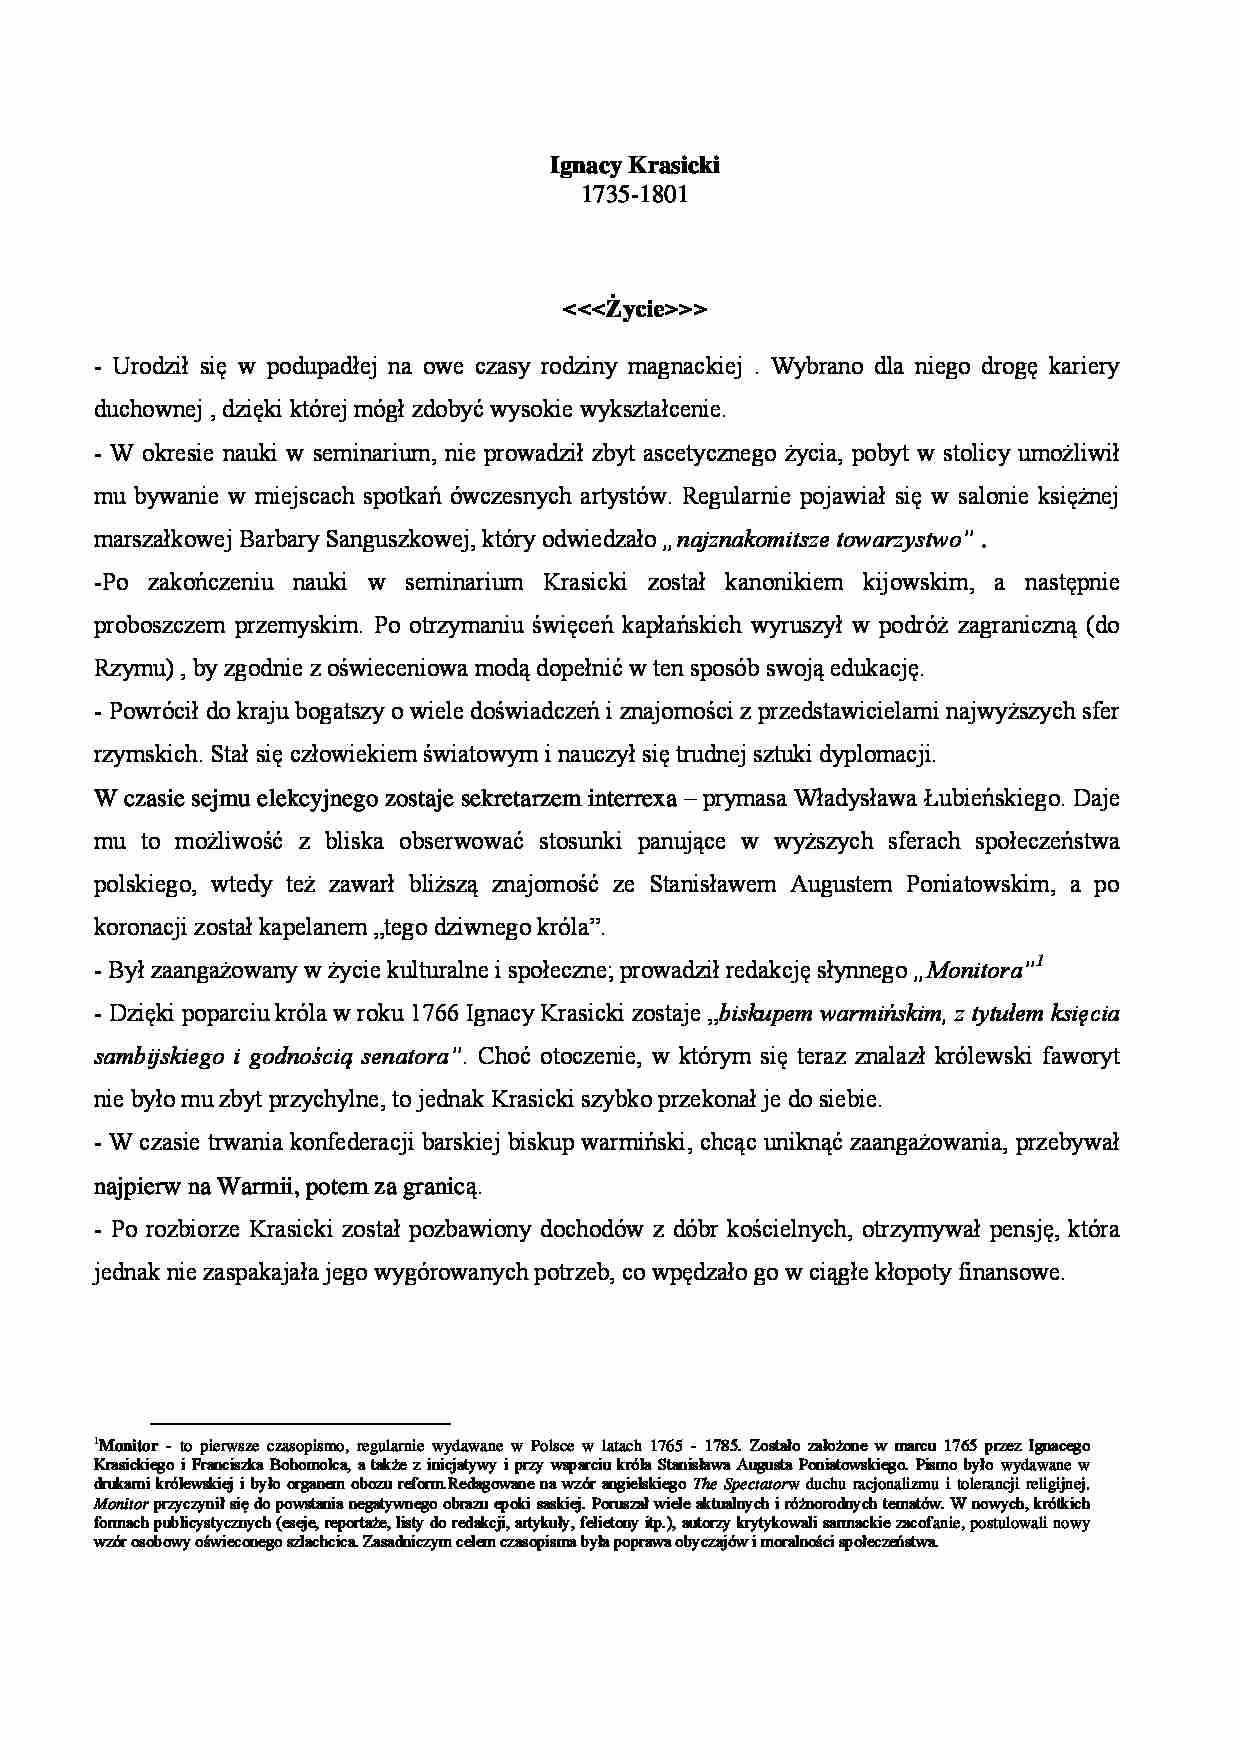 Ignacy Krasicki - życiorys i twórczość - strona 1